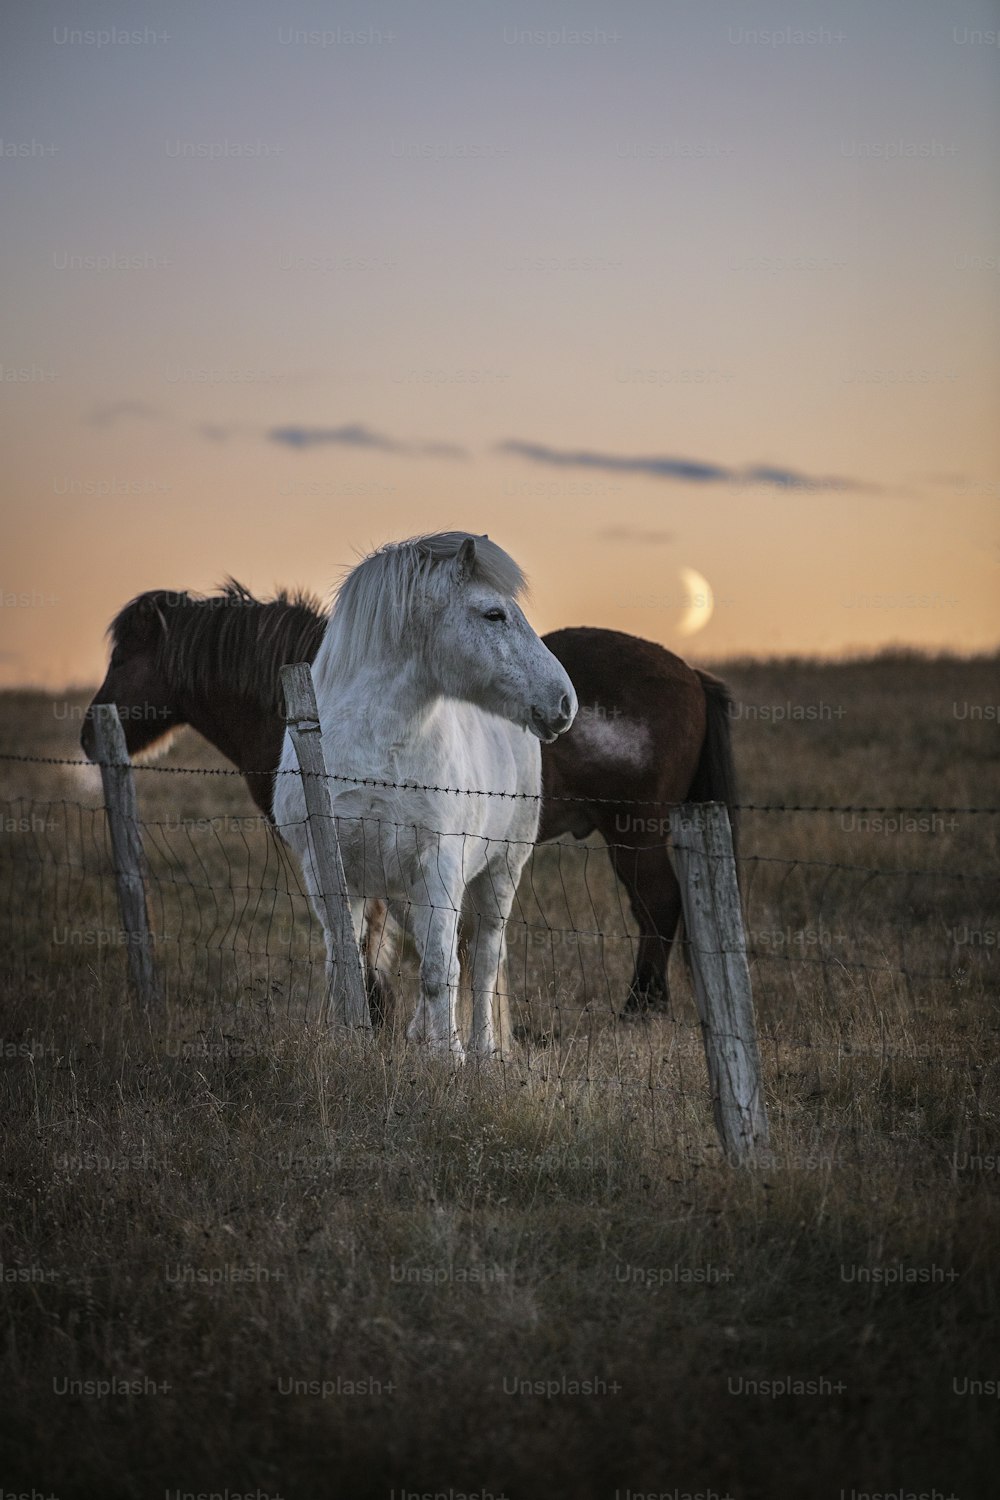 풀로 덮인 들판 위에 서 있는 두 마리의 말